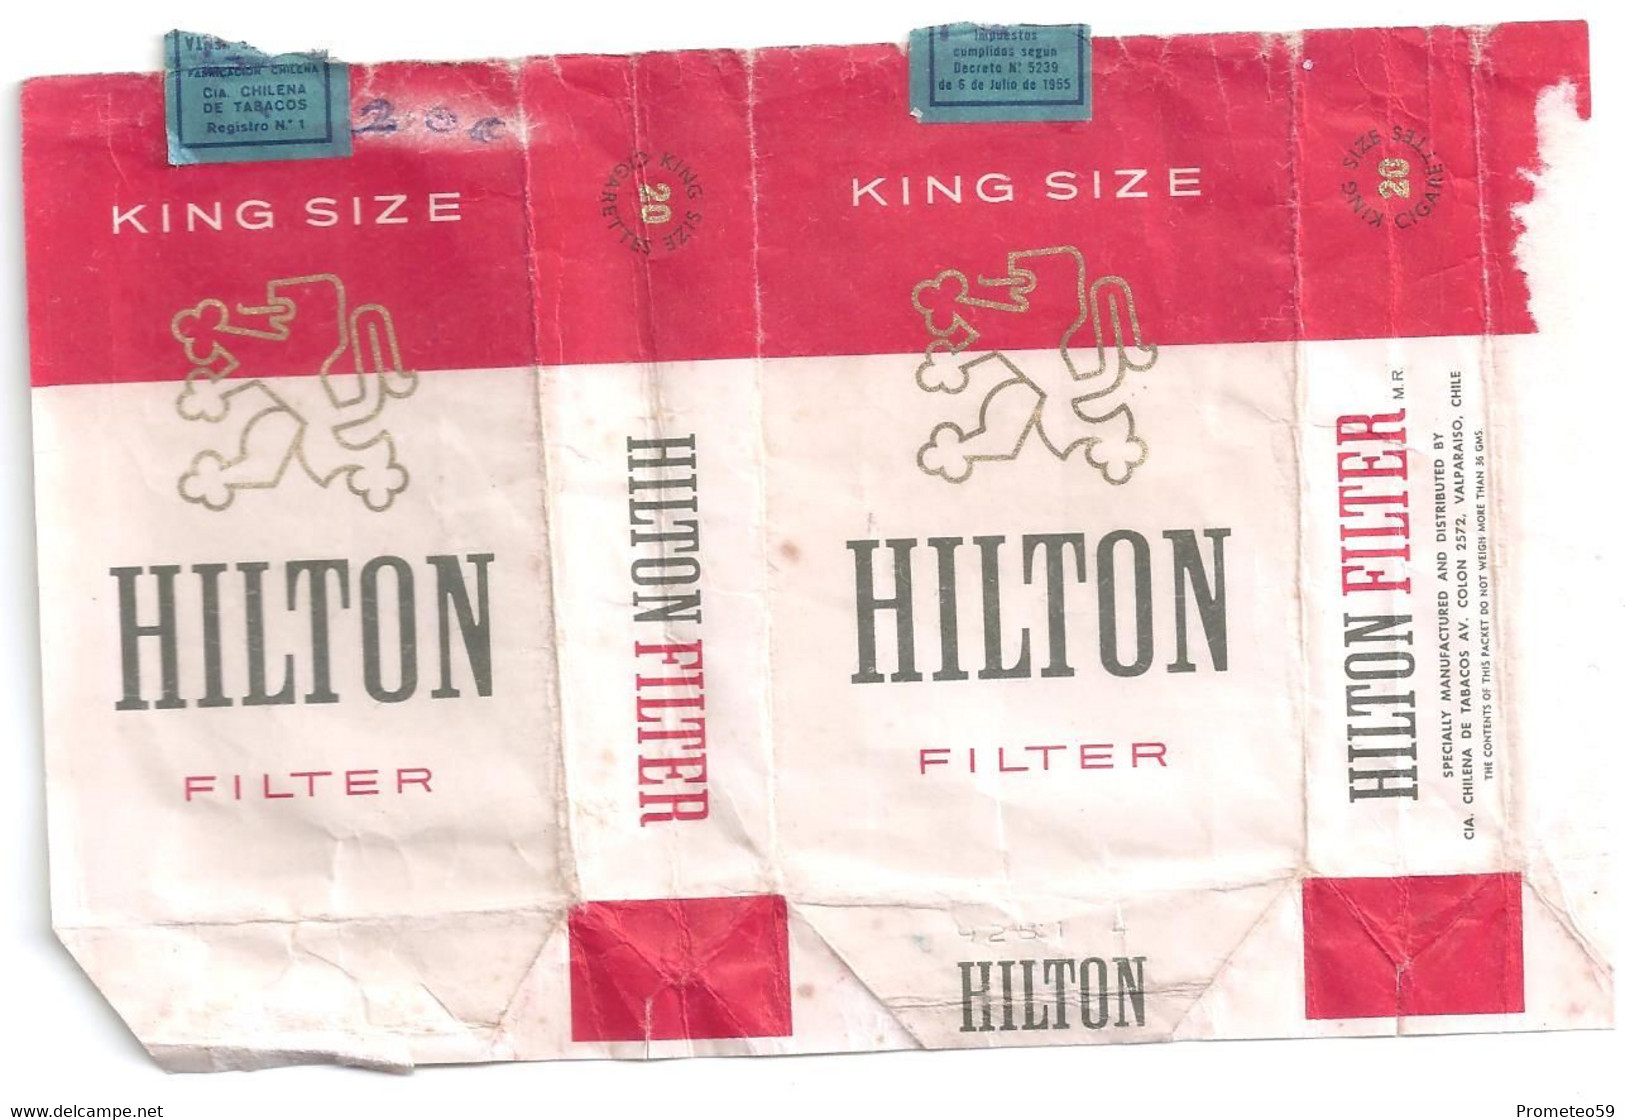 Marquilla Cigarrillos Hilton King Size - Origen: Chile - Contenitori Di Tabacco (vuoti)